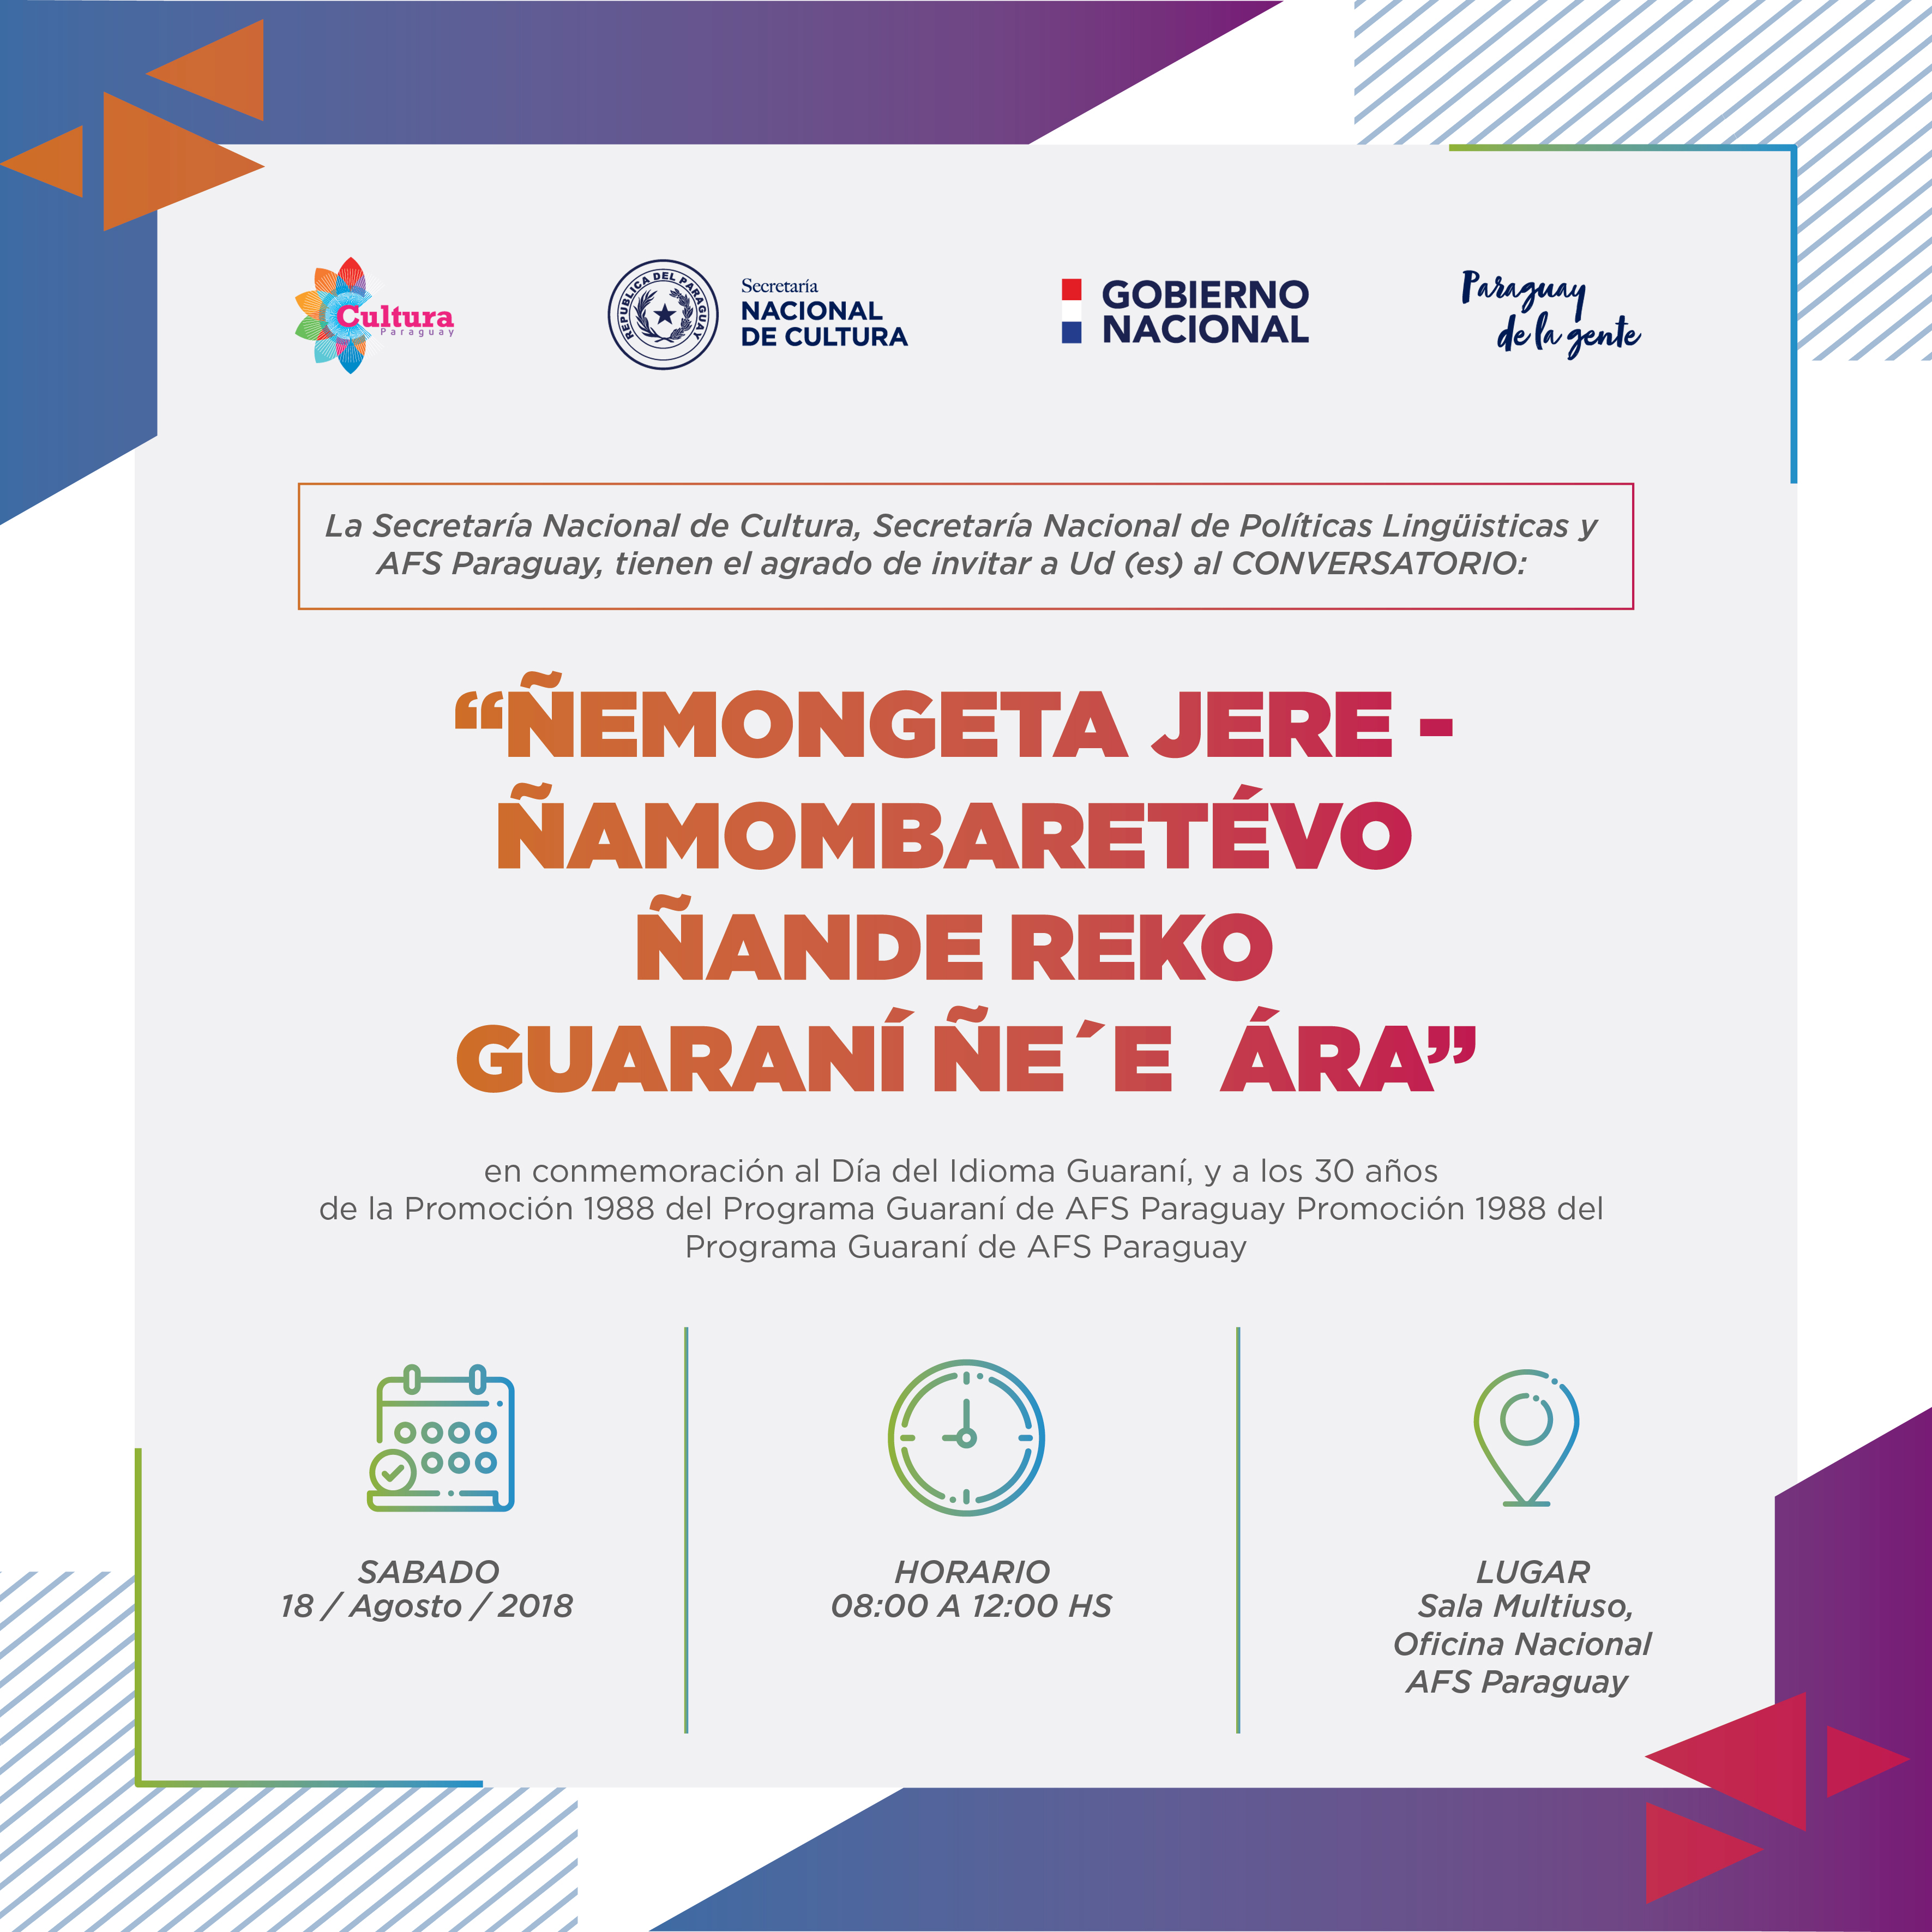 Realizarán Conversatorio “Ñemongeta Jere” en homenaje al Día de la Lengua Guaraní imagen